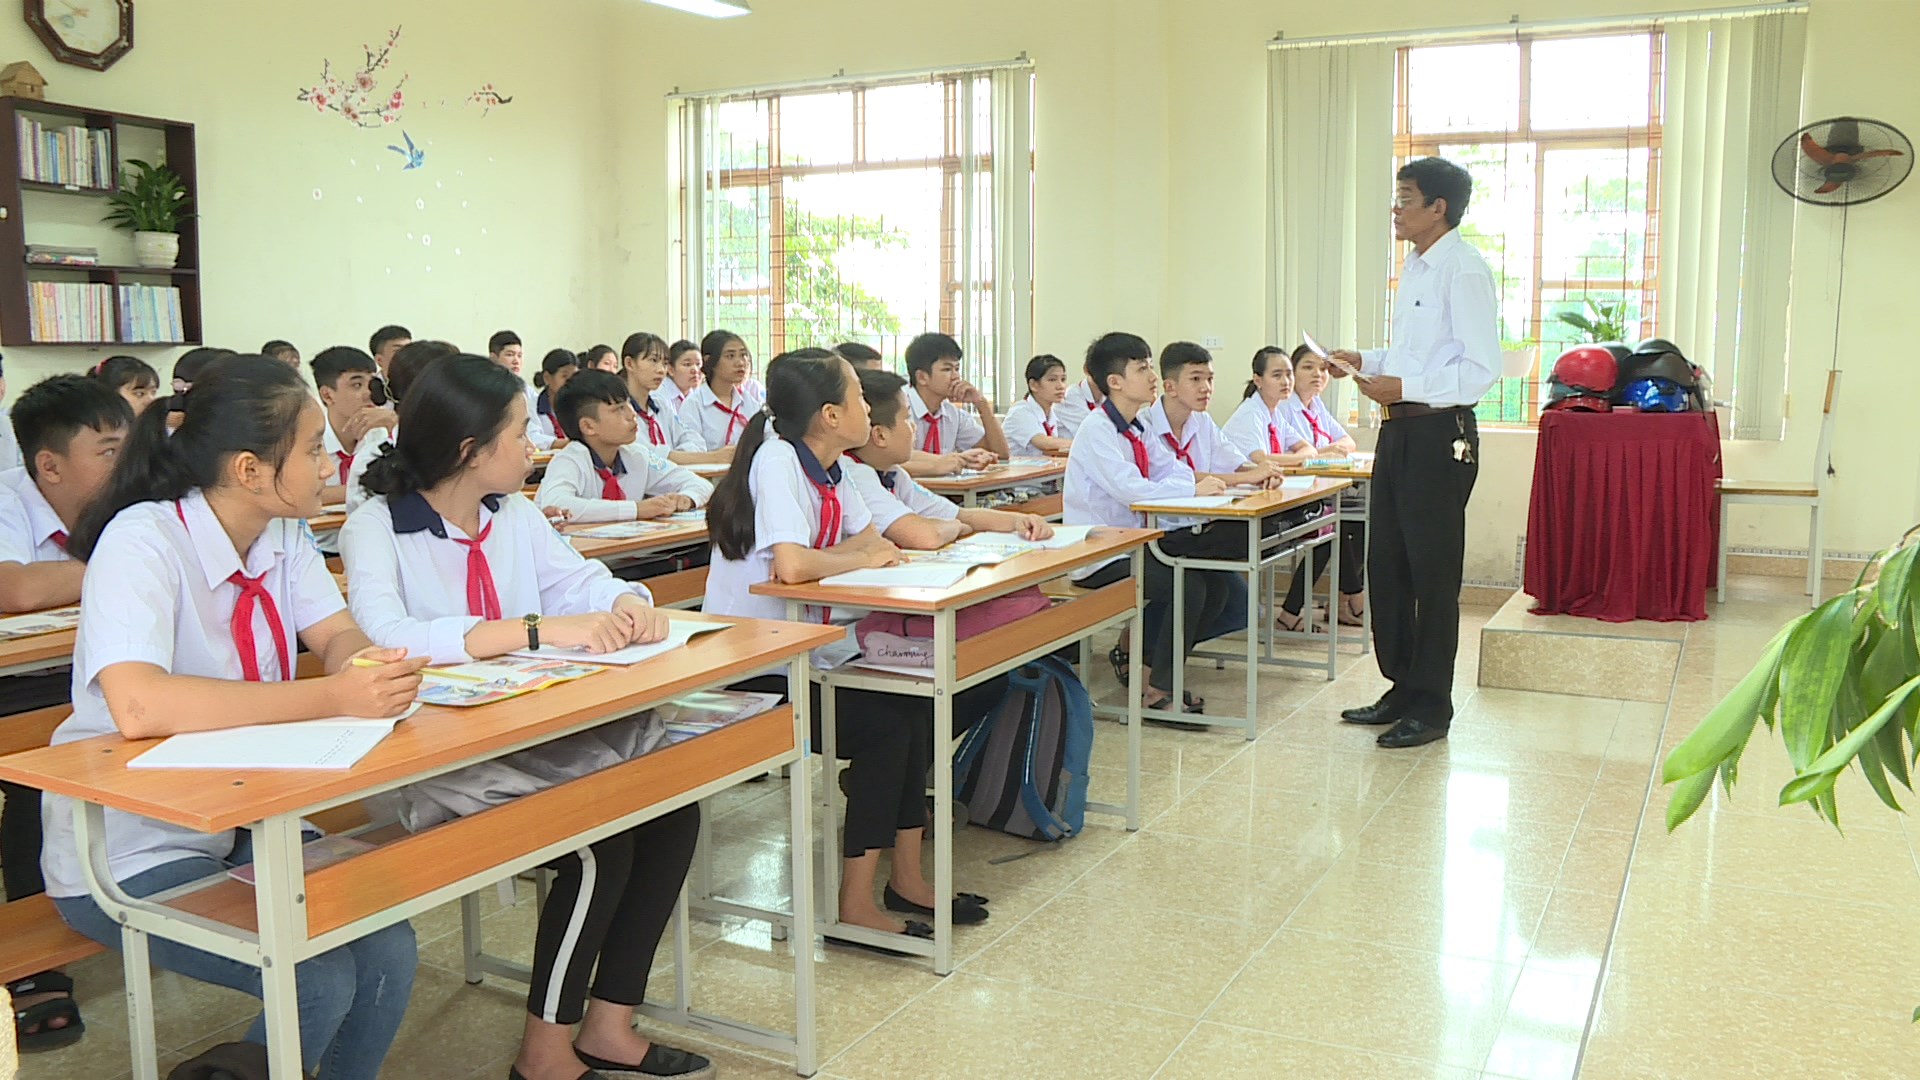 Ông Nguyễn Văn Bốn, Bí thư Chi bộ, Trưởng khu Xuân Quang (Yên Thọ, Đông Triều) tuyên truyền pháp luật cho các em học sinh.